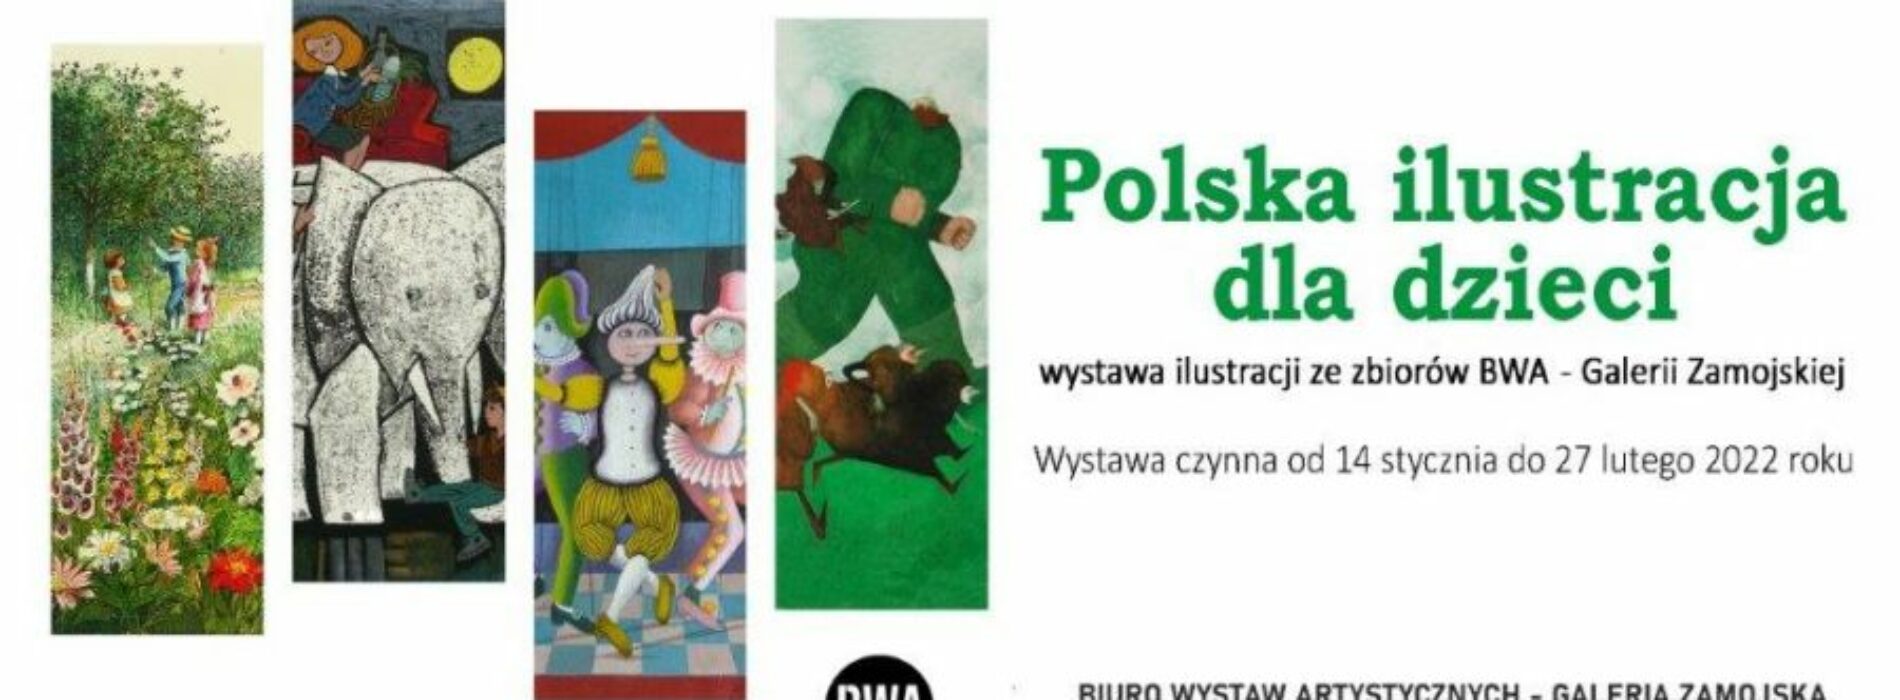 Wystawa „Polska ilustracja dla dzieci” w BWA